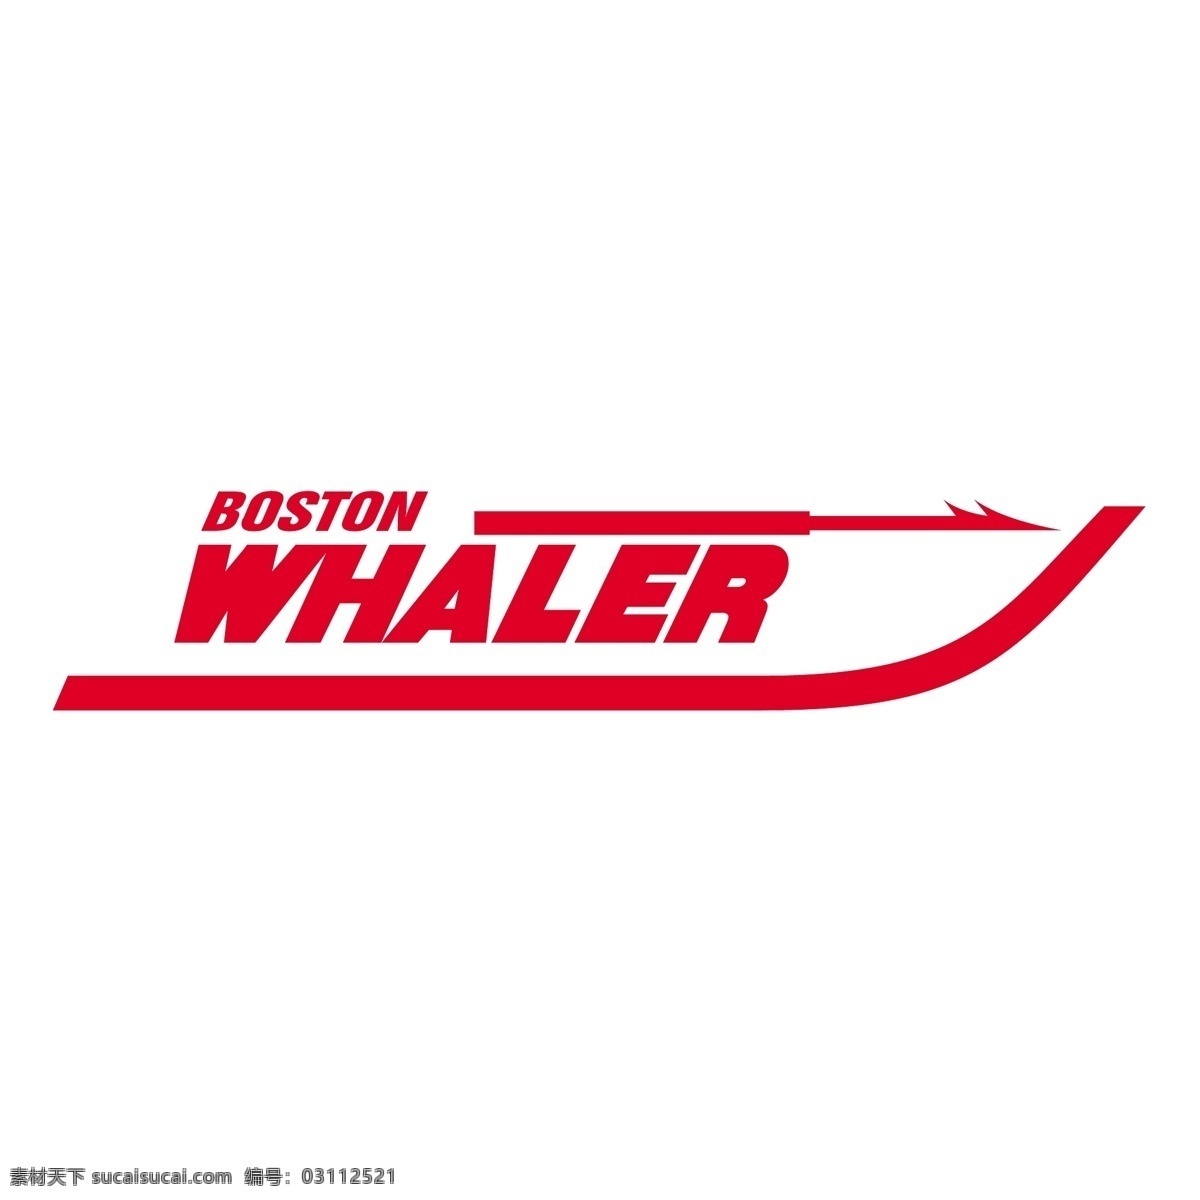 波士顿 捕鲸船 波士顿捕鲸船 向量 免费 矢量 凯尔特 人 矢量图像 标志 标志波士顿 波士顿的标志 建筑家居